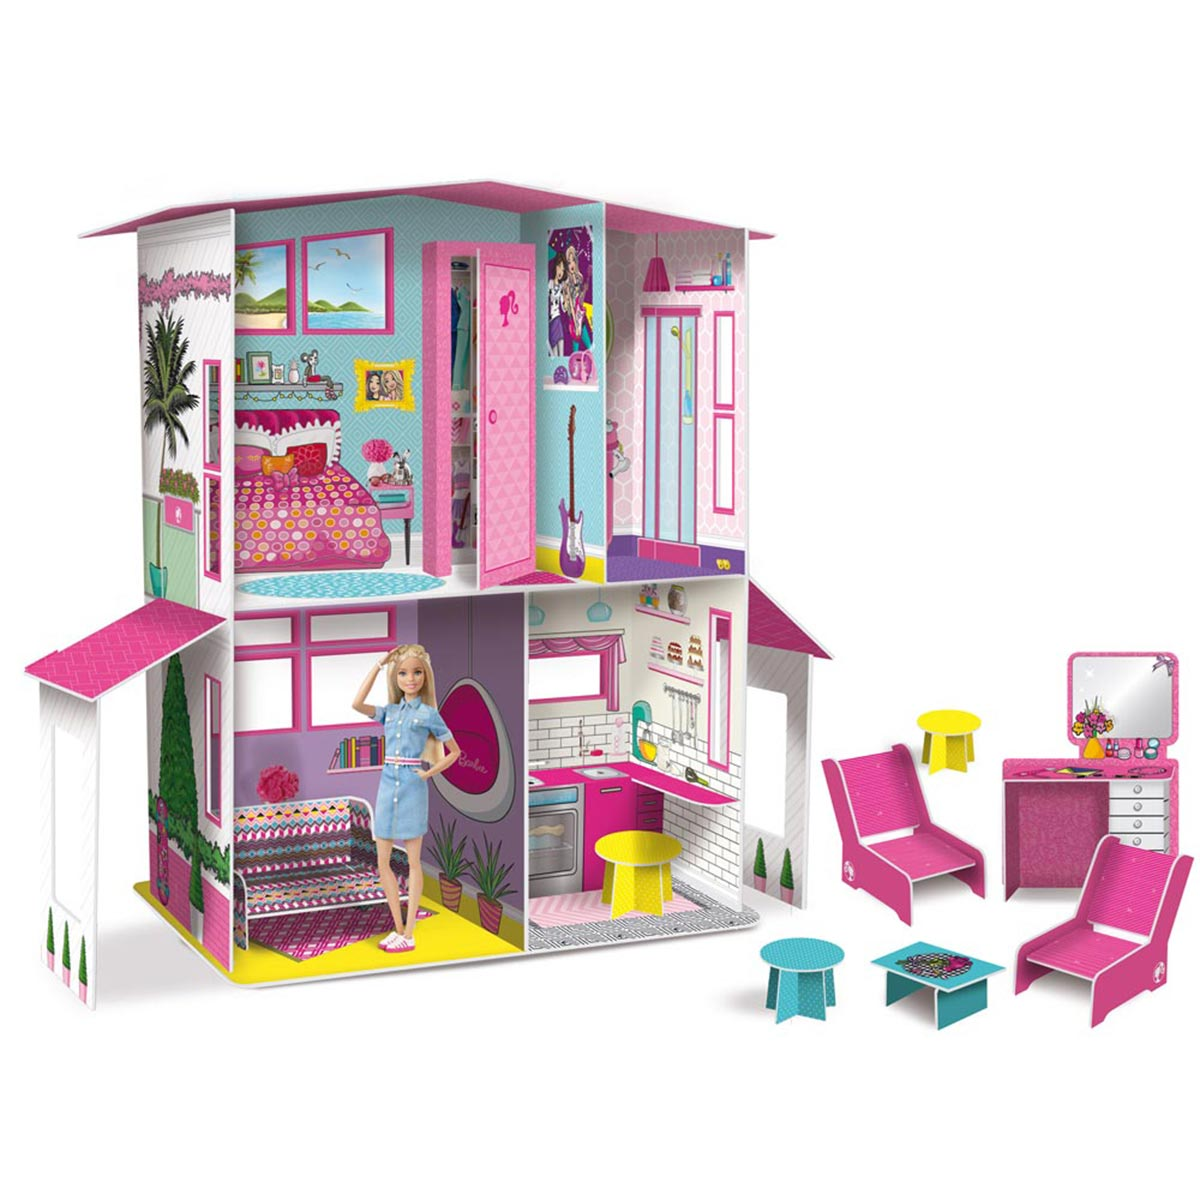 BARBIE Barbie 2-Stöckiges Traumhaus, Barbie Lisciani von mehrfarbig Lernspiele